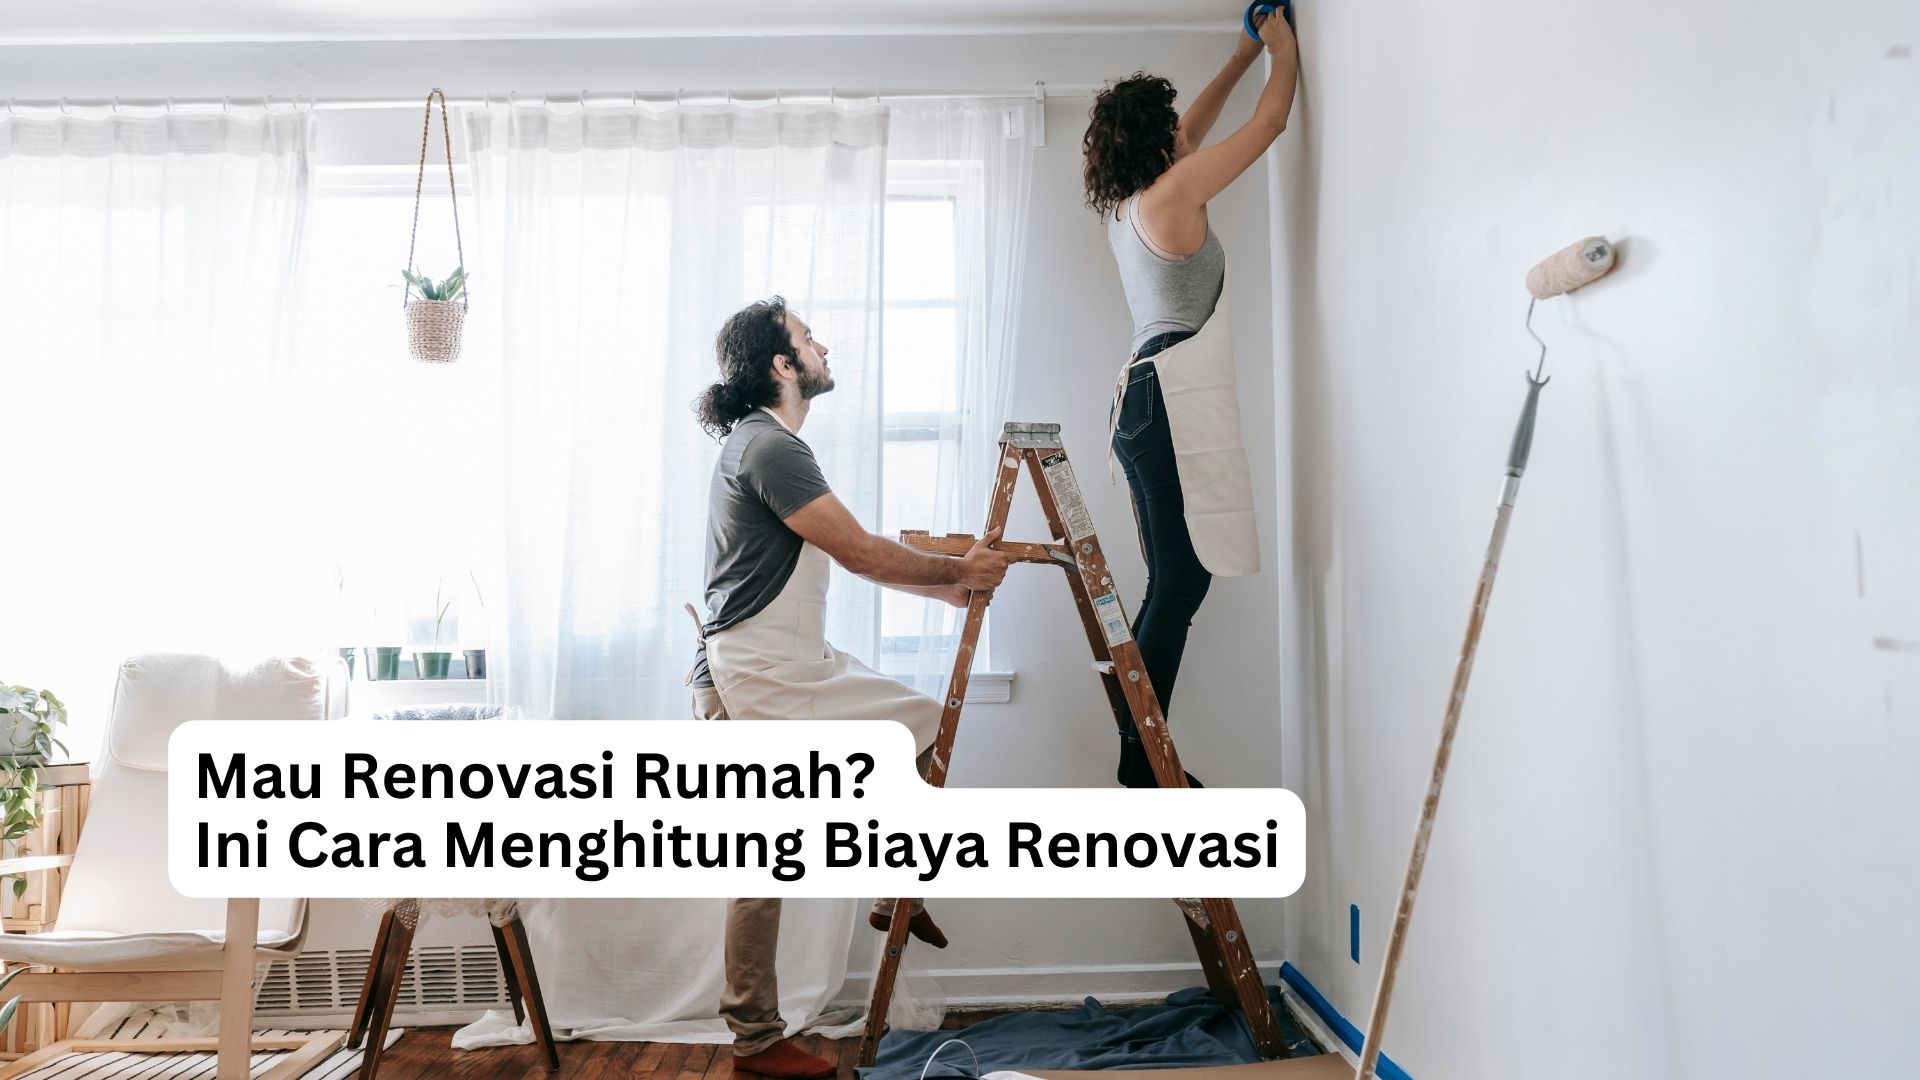 You are currently viewing Mau Renovasi Rumah? Ini Cara Menghitung Biaya Renovasi